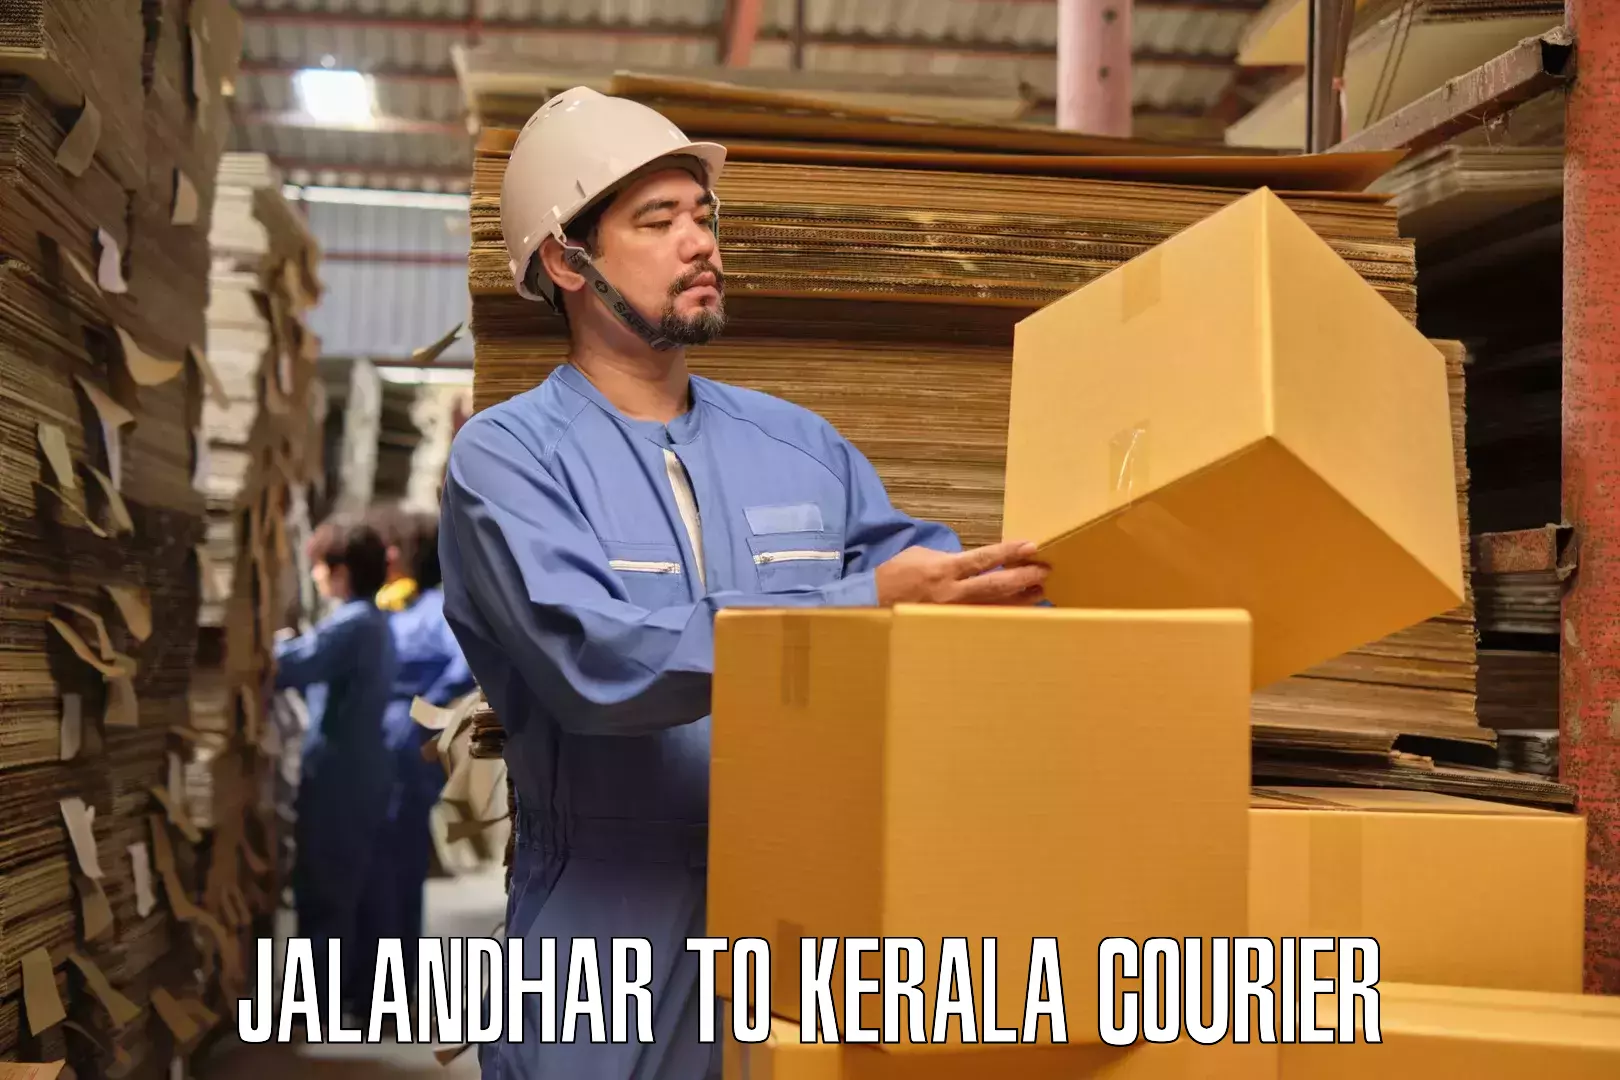 Skilled furniture transport in Jalandhar to Palakkad